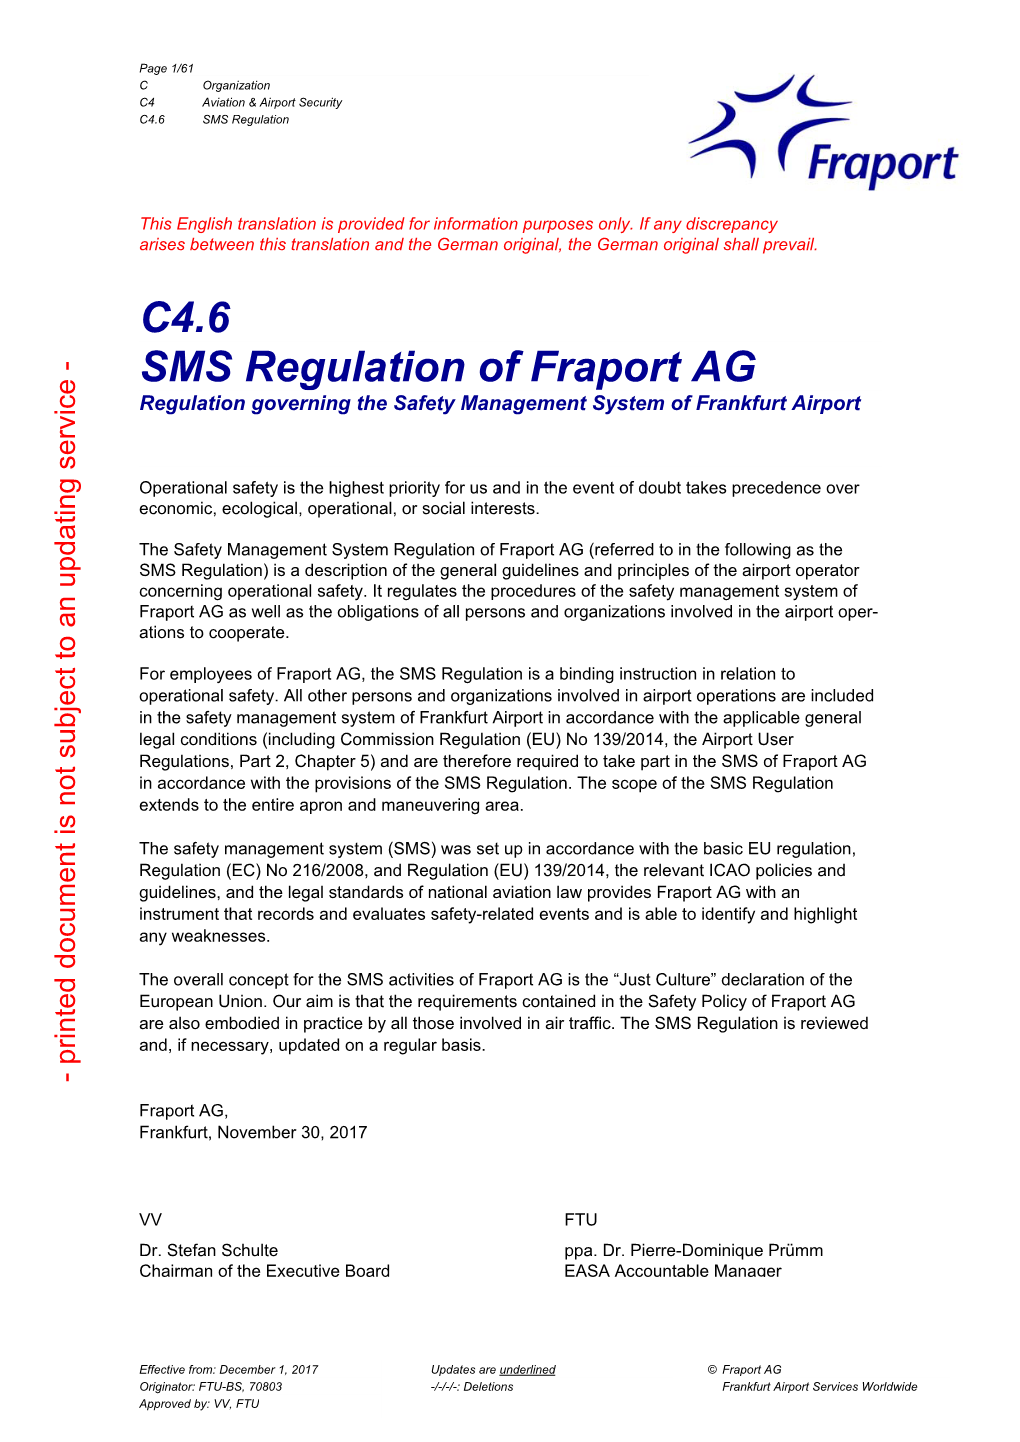 C4.6 SMS Regulation of Fraport AG Regulation Governing the Safety Management System of Frankfurt Airport